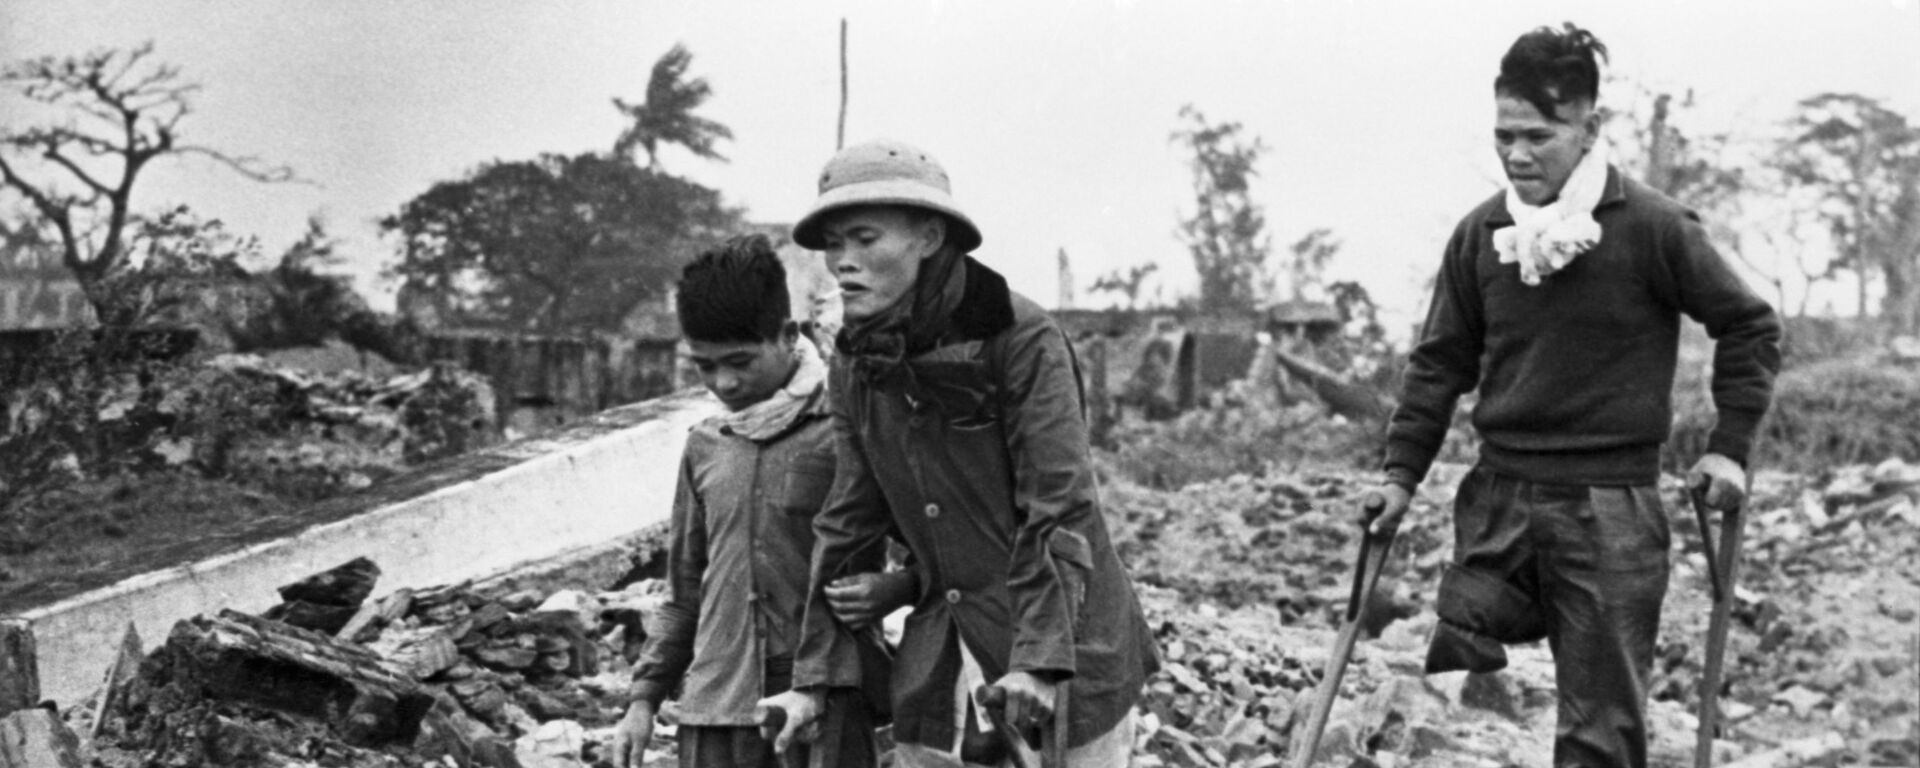 Chiến tranh ở Việt Nam (1964-1975). Các cư dân Việt Nam bị thiệt hại vì những trận ném bom của máy bay Mỹ - Sputnik Việt Nam, 1920, 27.07.2021